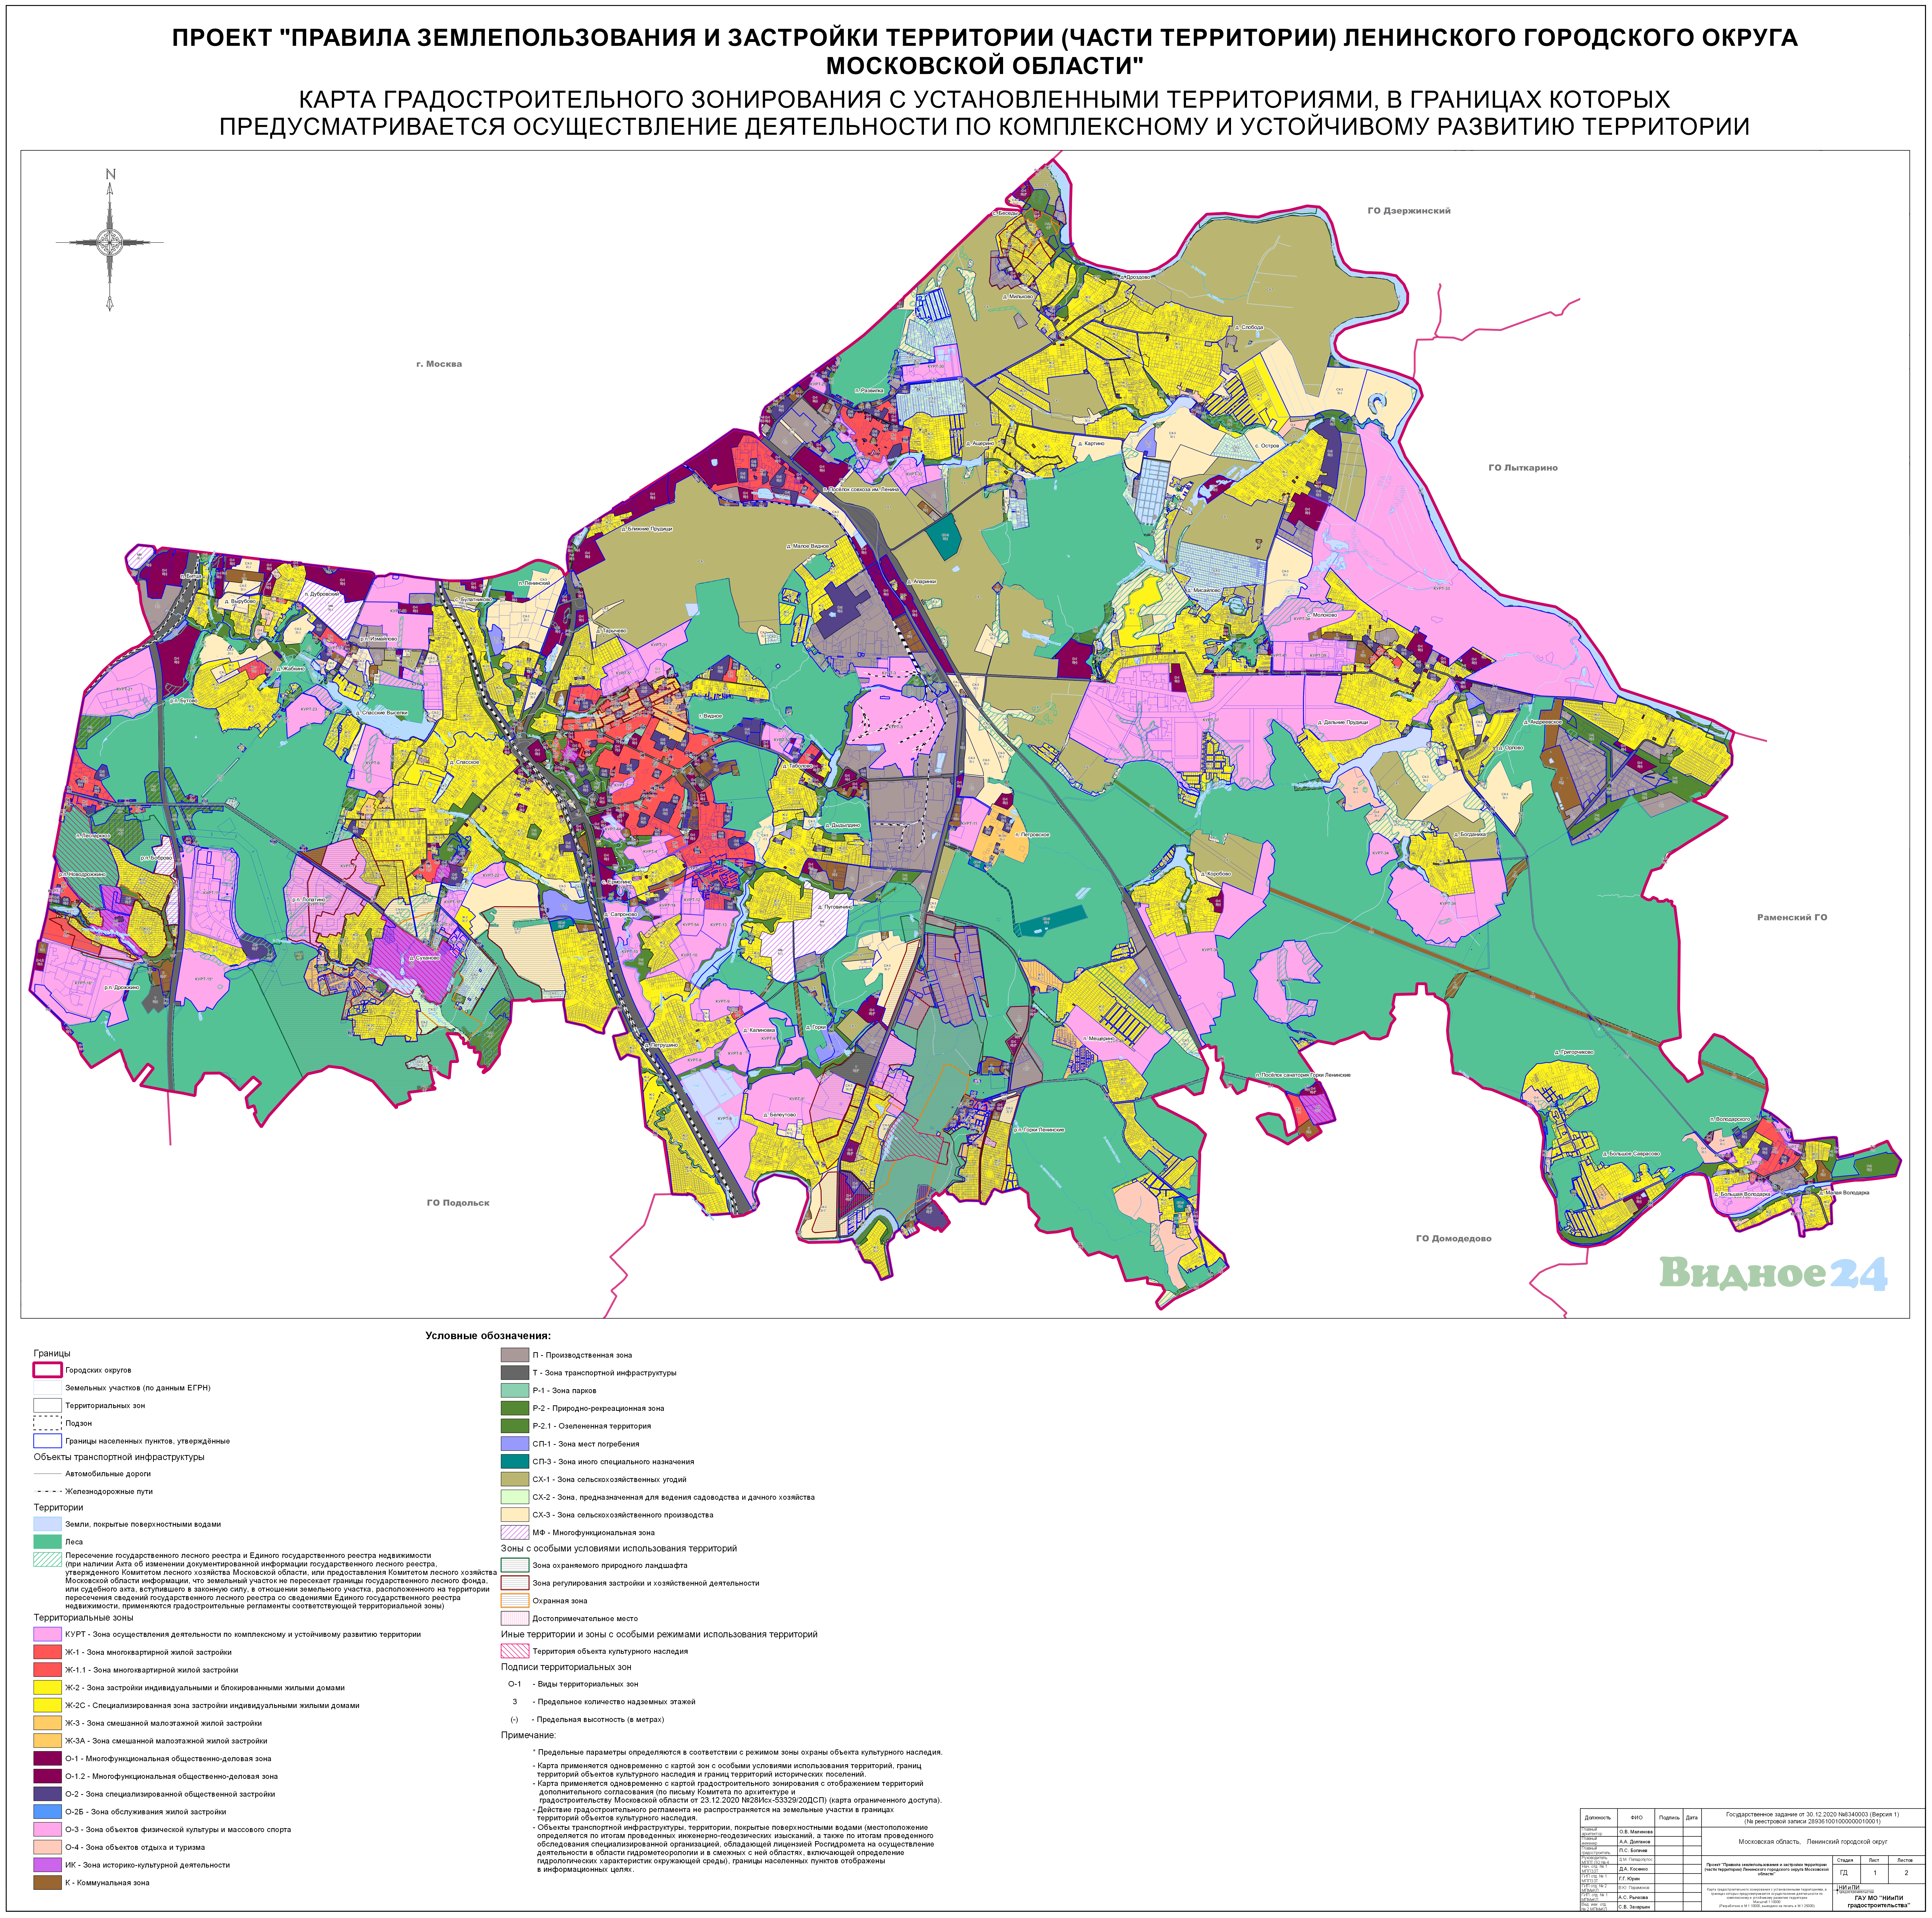 Карта градостроительного зонирования городского округа